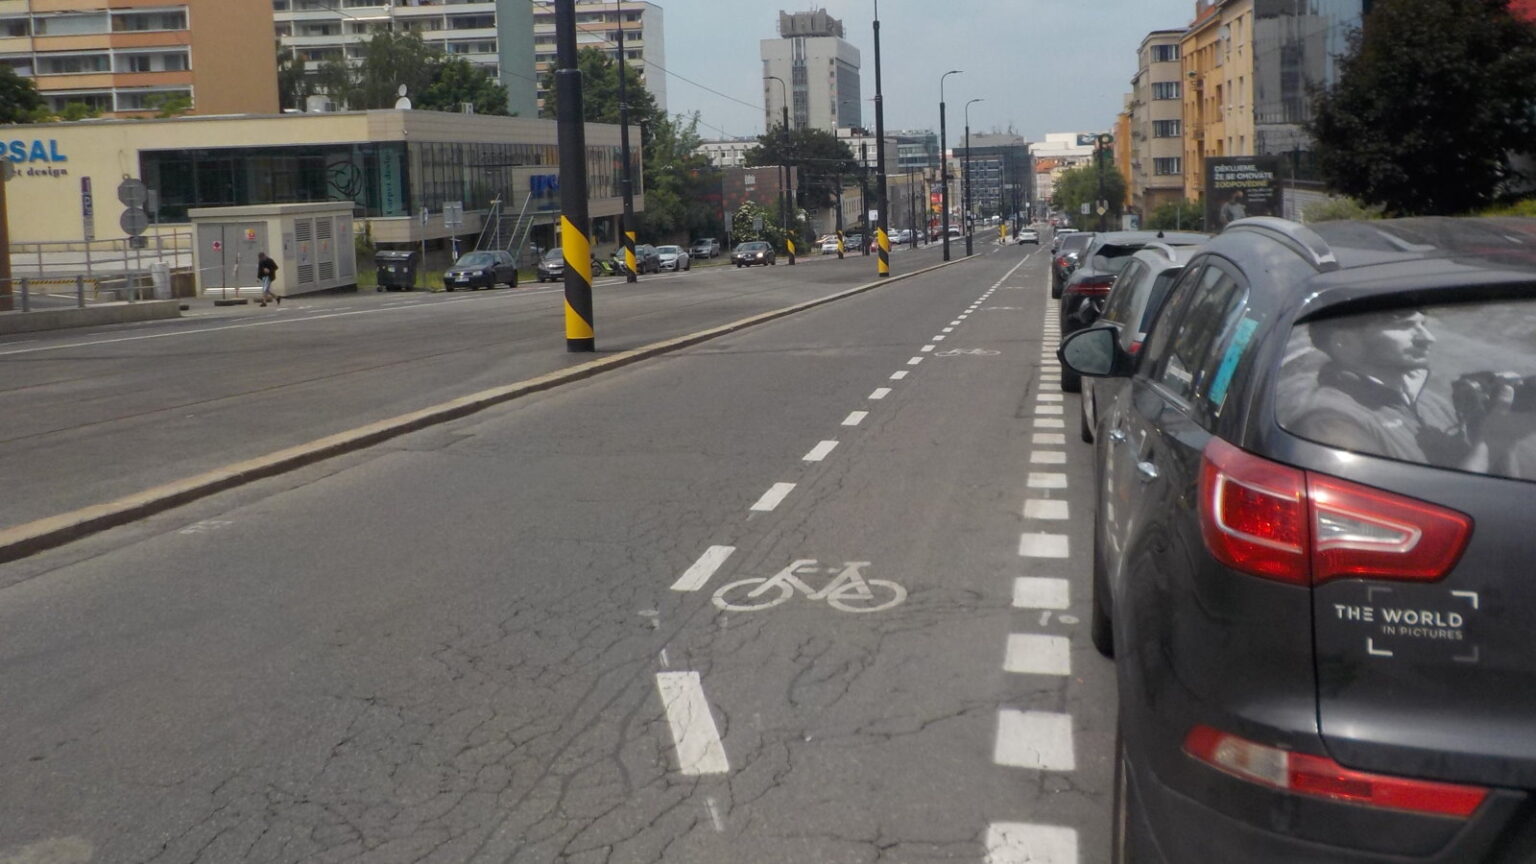 Ulice Na Pankráci, nový ochranný cyklopruh je pro rychlou jízdu v klesání nebezpečně úzký. Zdroj: Vratislav Filler